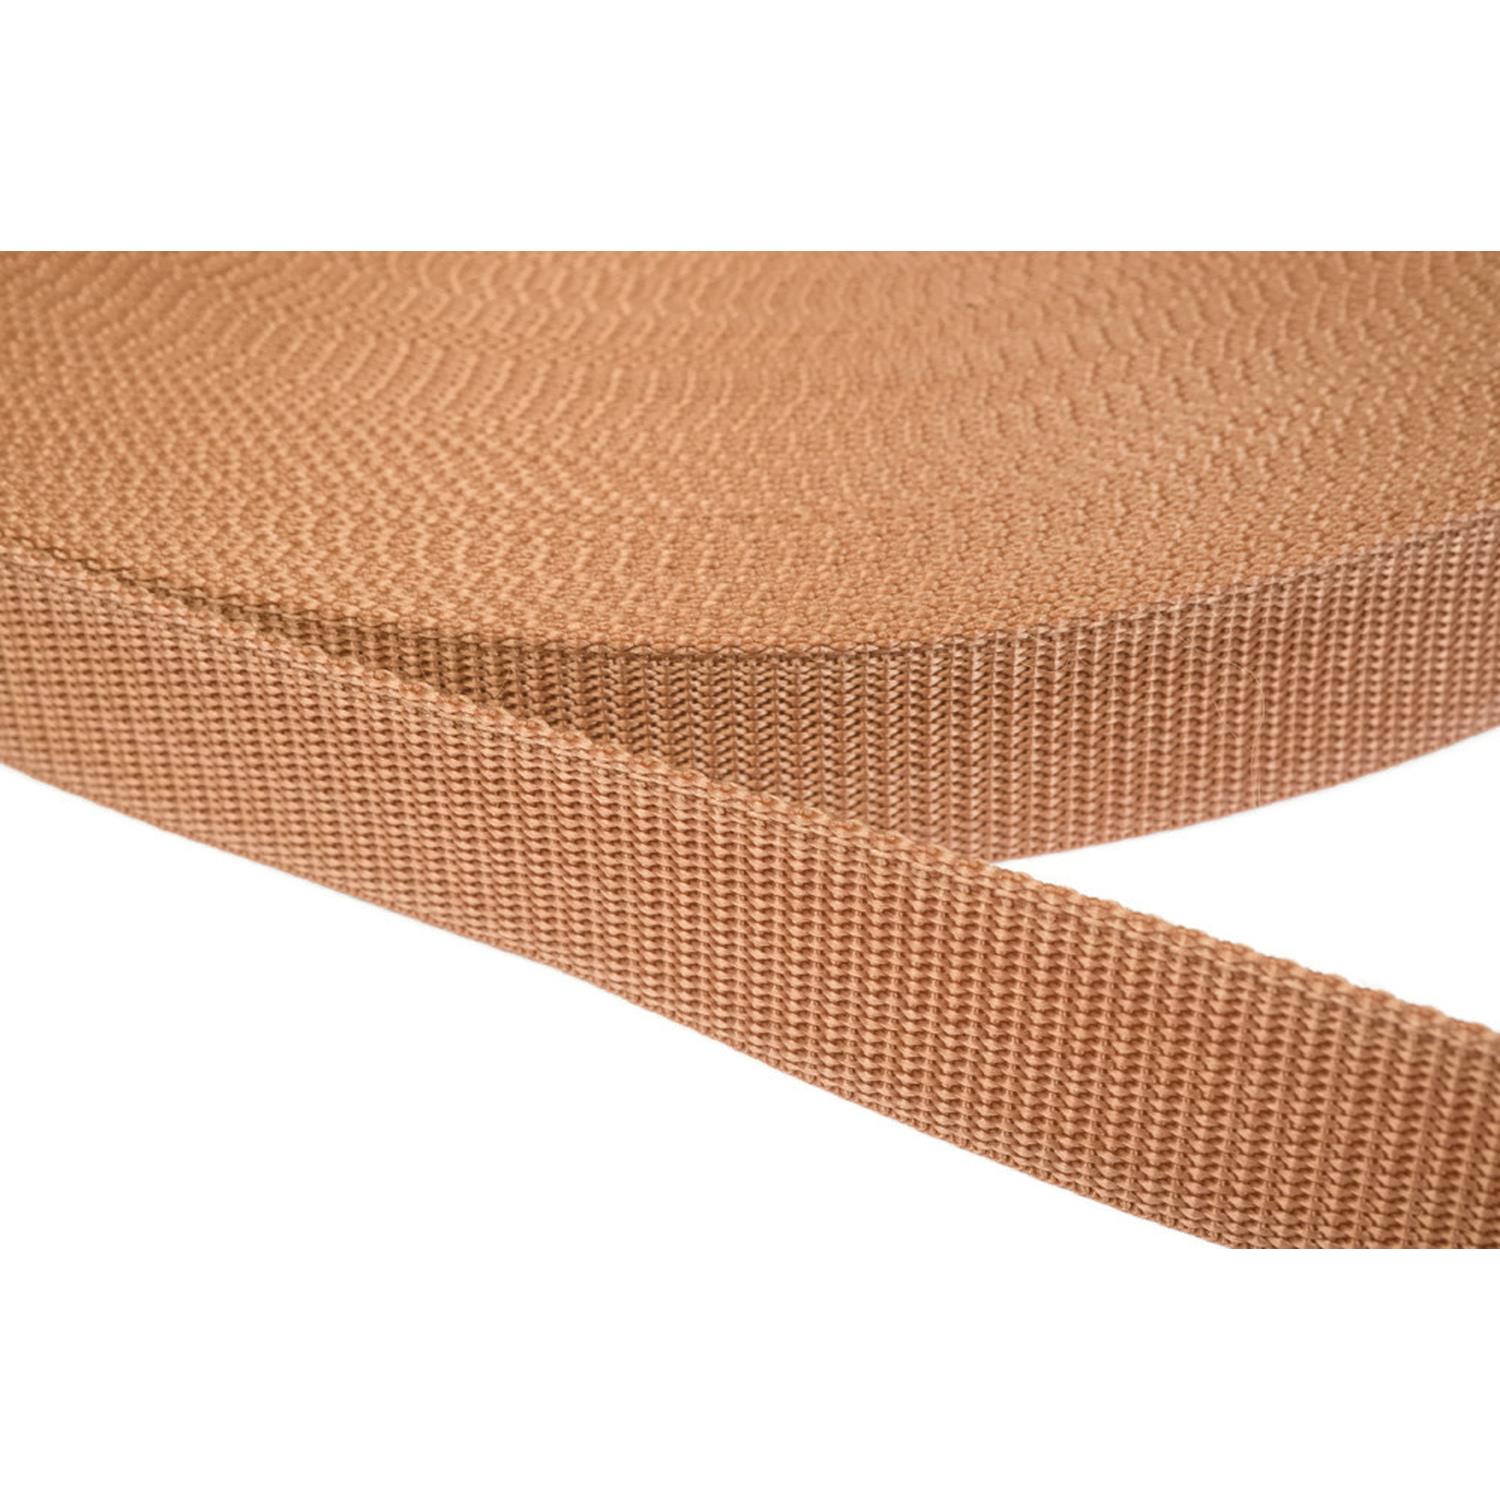 Gurtband 20mm breit aus Polypropylen in 41 Farben 06 - hellbraun 50 Meter